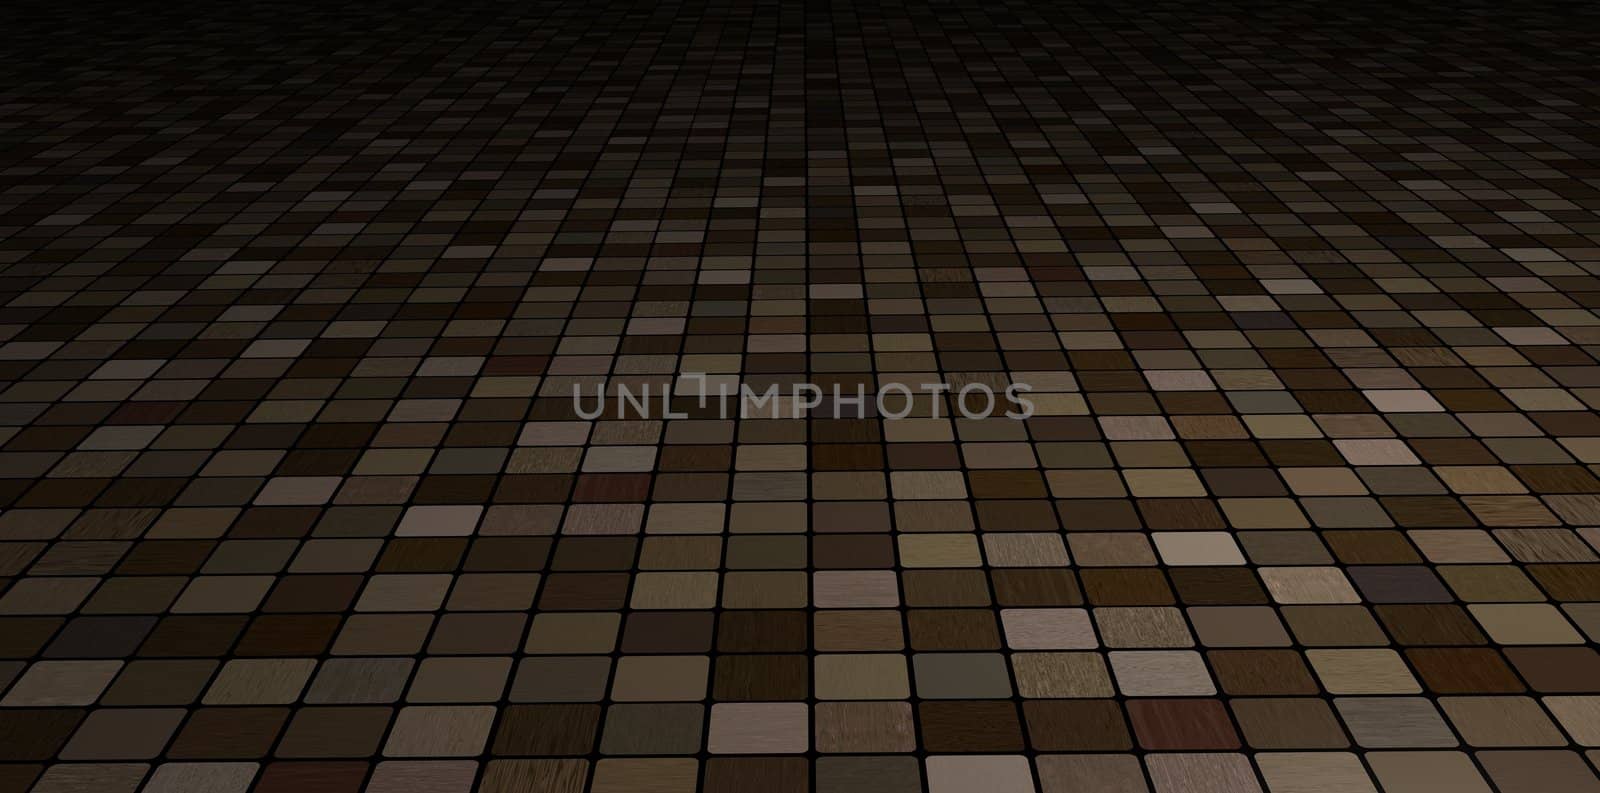 Tiled Floor by darrenwhittingham